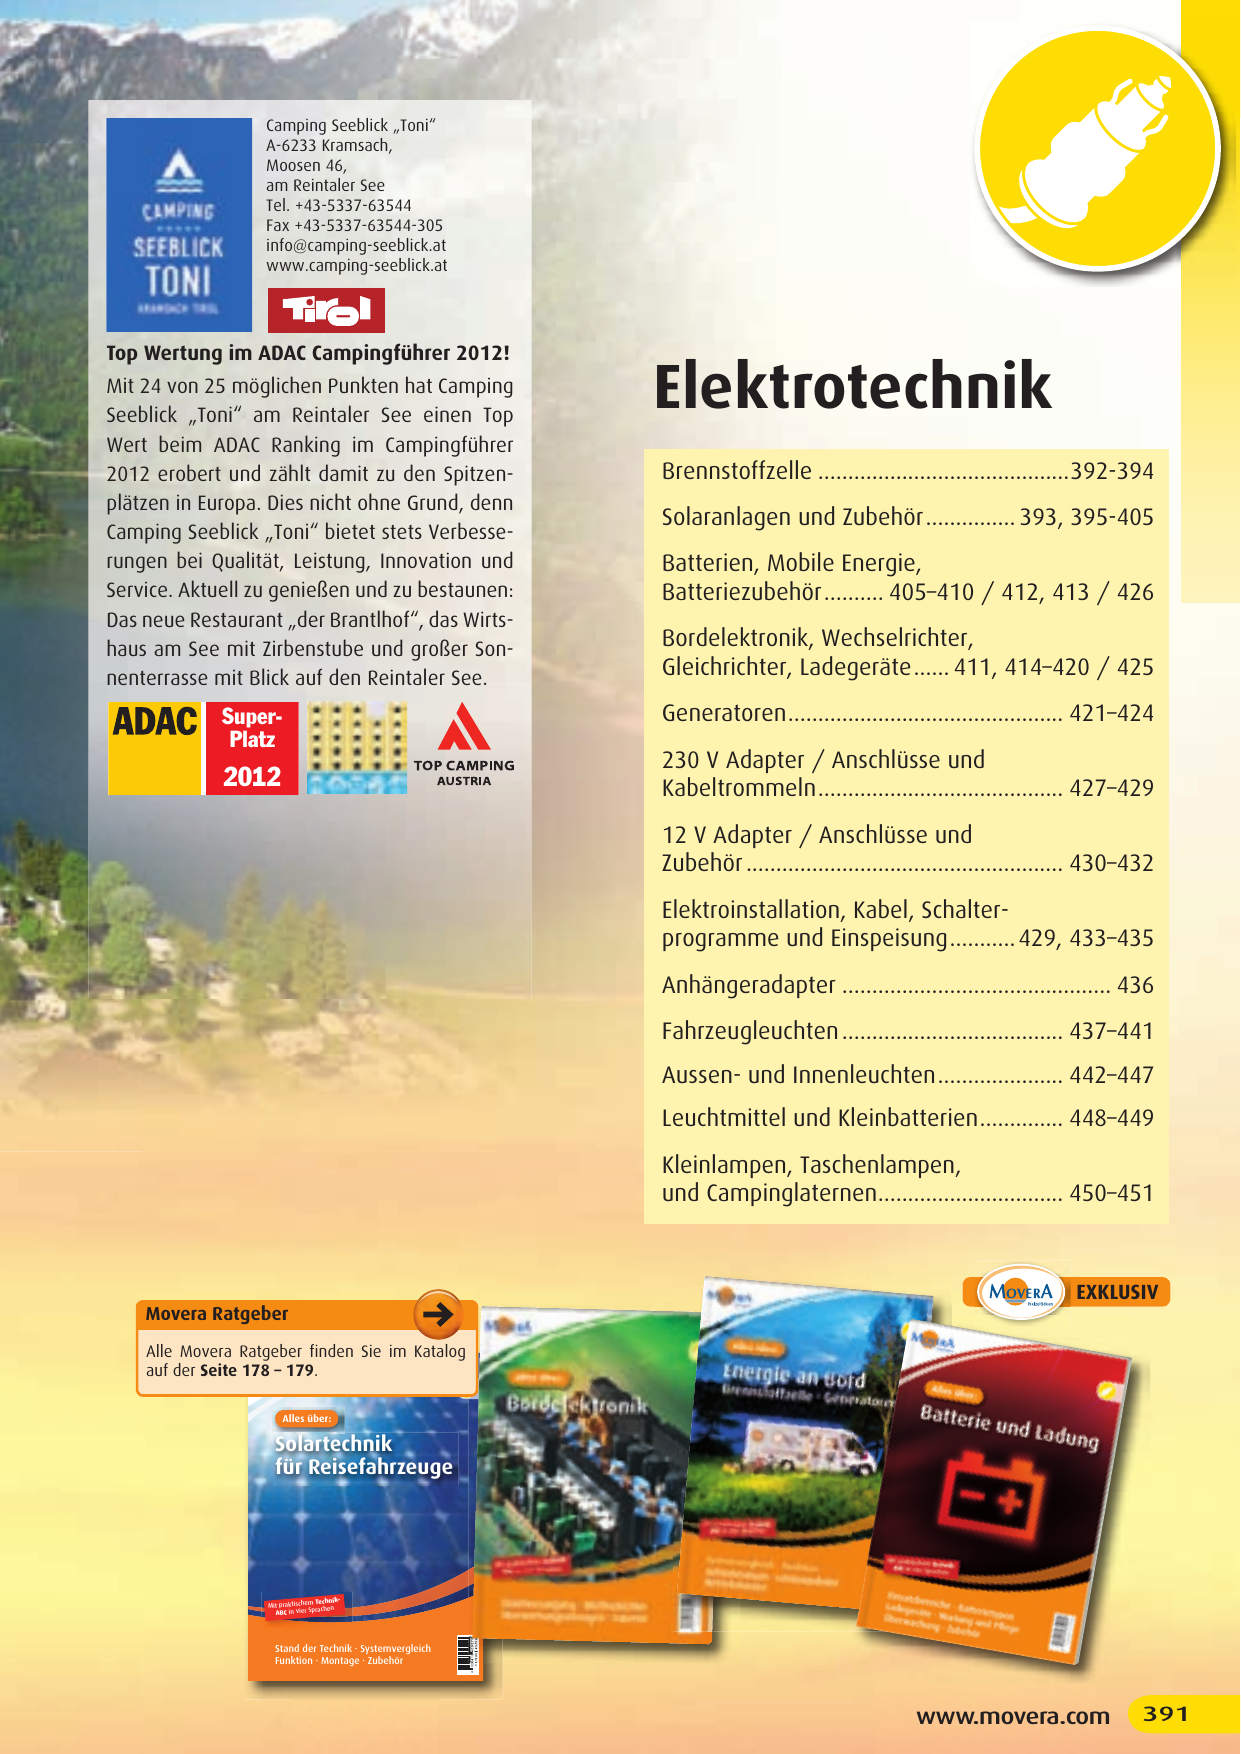 GUMMI 2er Steckdose Schuko Adapter 4,99€/Stk Schukostecker STECKER Verteiler XX 